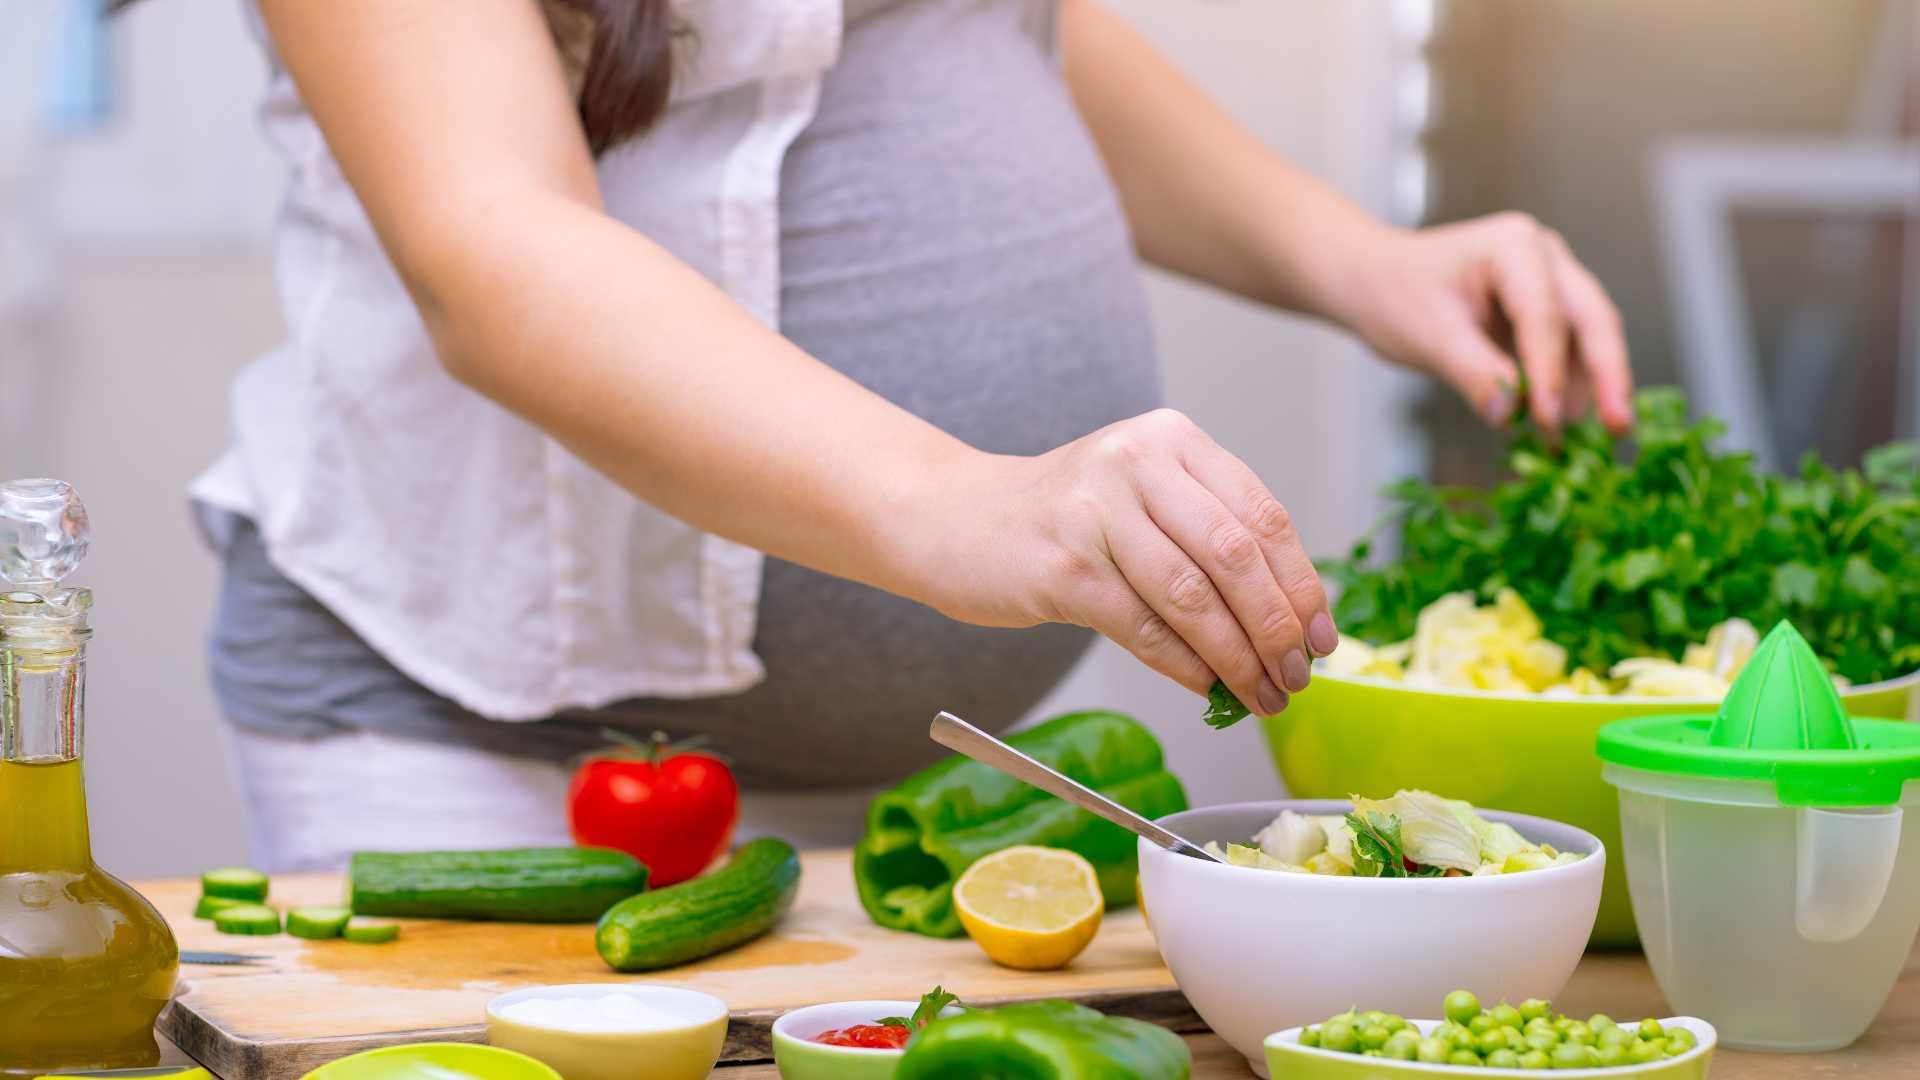 رژیم غذایی دوران بارداری و شیردهی (6 جلسه) تلفنی